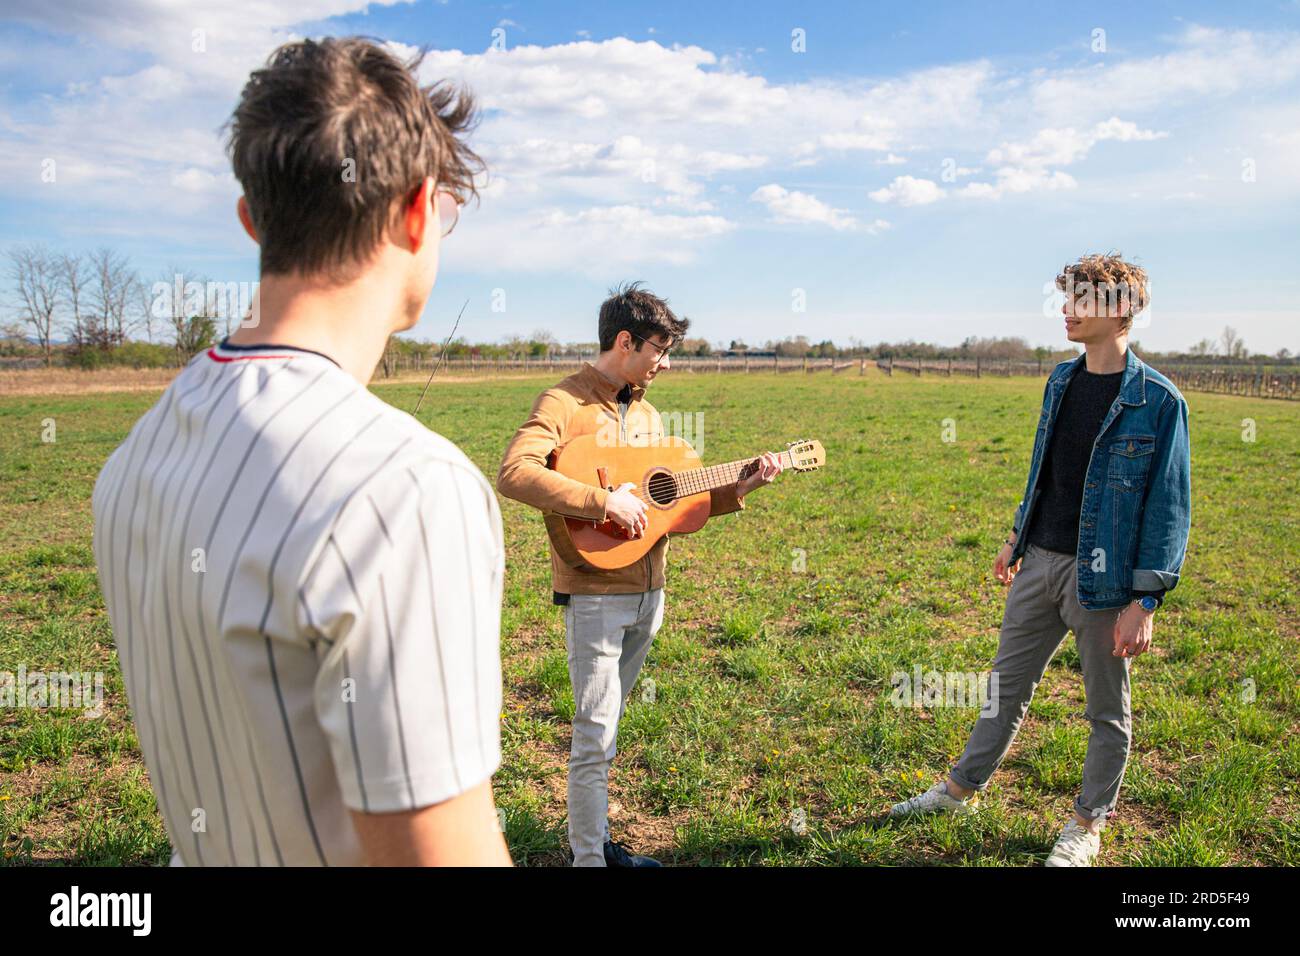 Un gruppo di amici si incontra in un campo per suonare la chitarra e cantare insieme Foto Stock